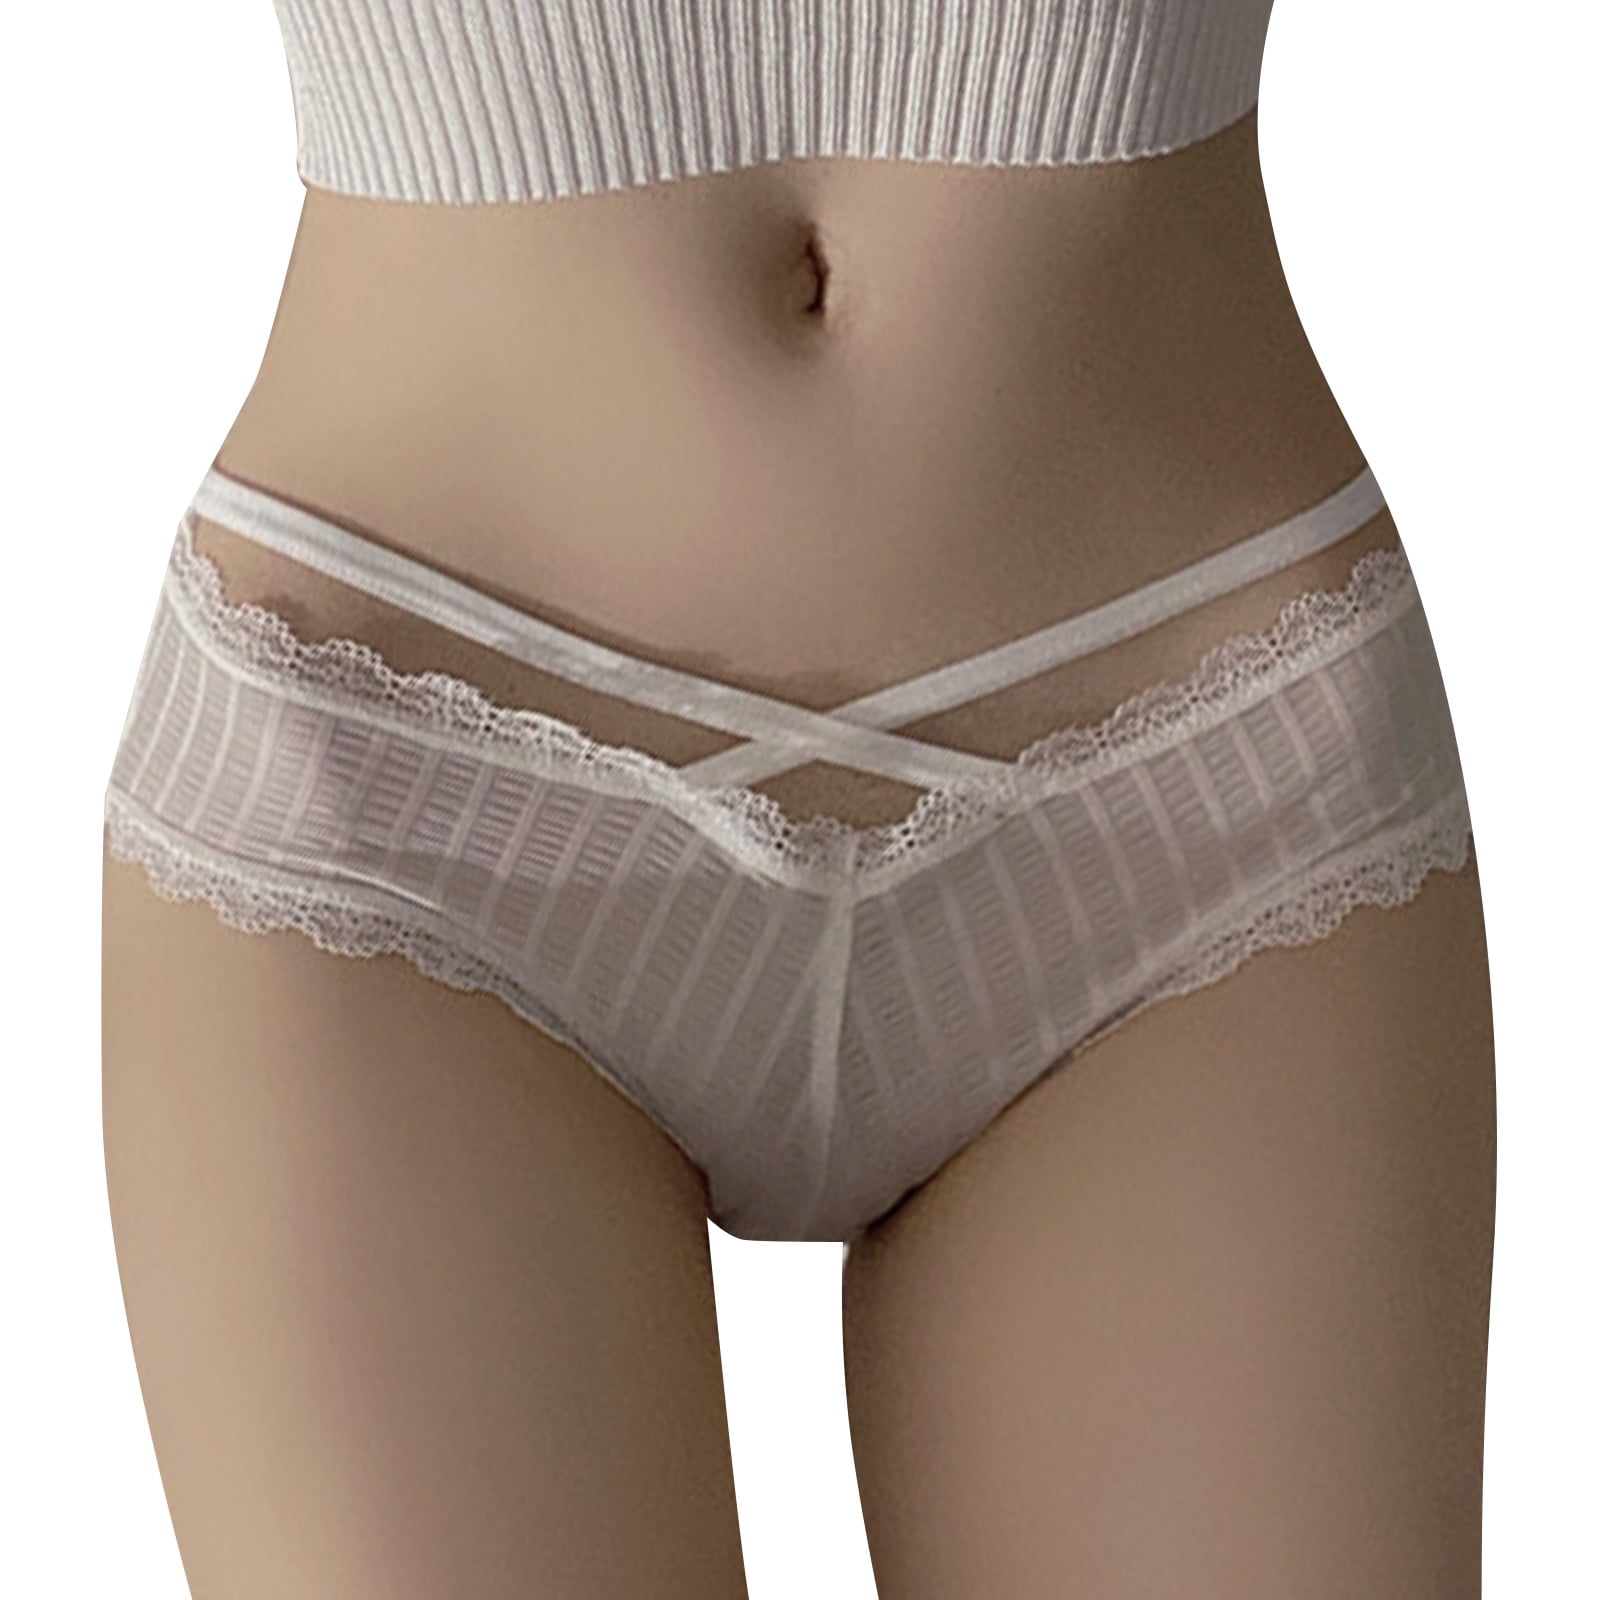 ZRBYWB Women's Underwear Low Waist Mature Girls Tight Ladies